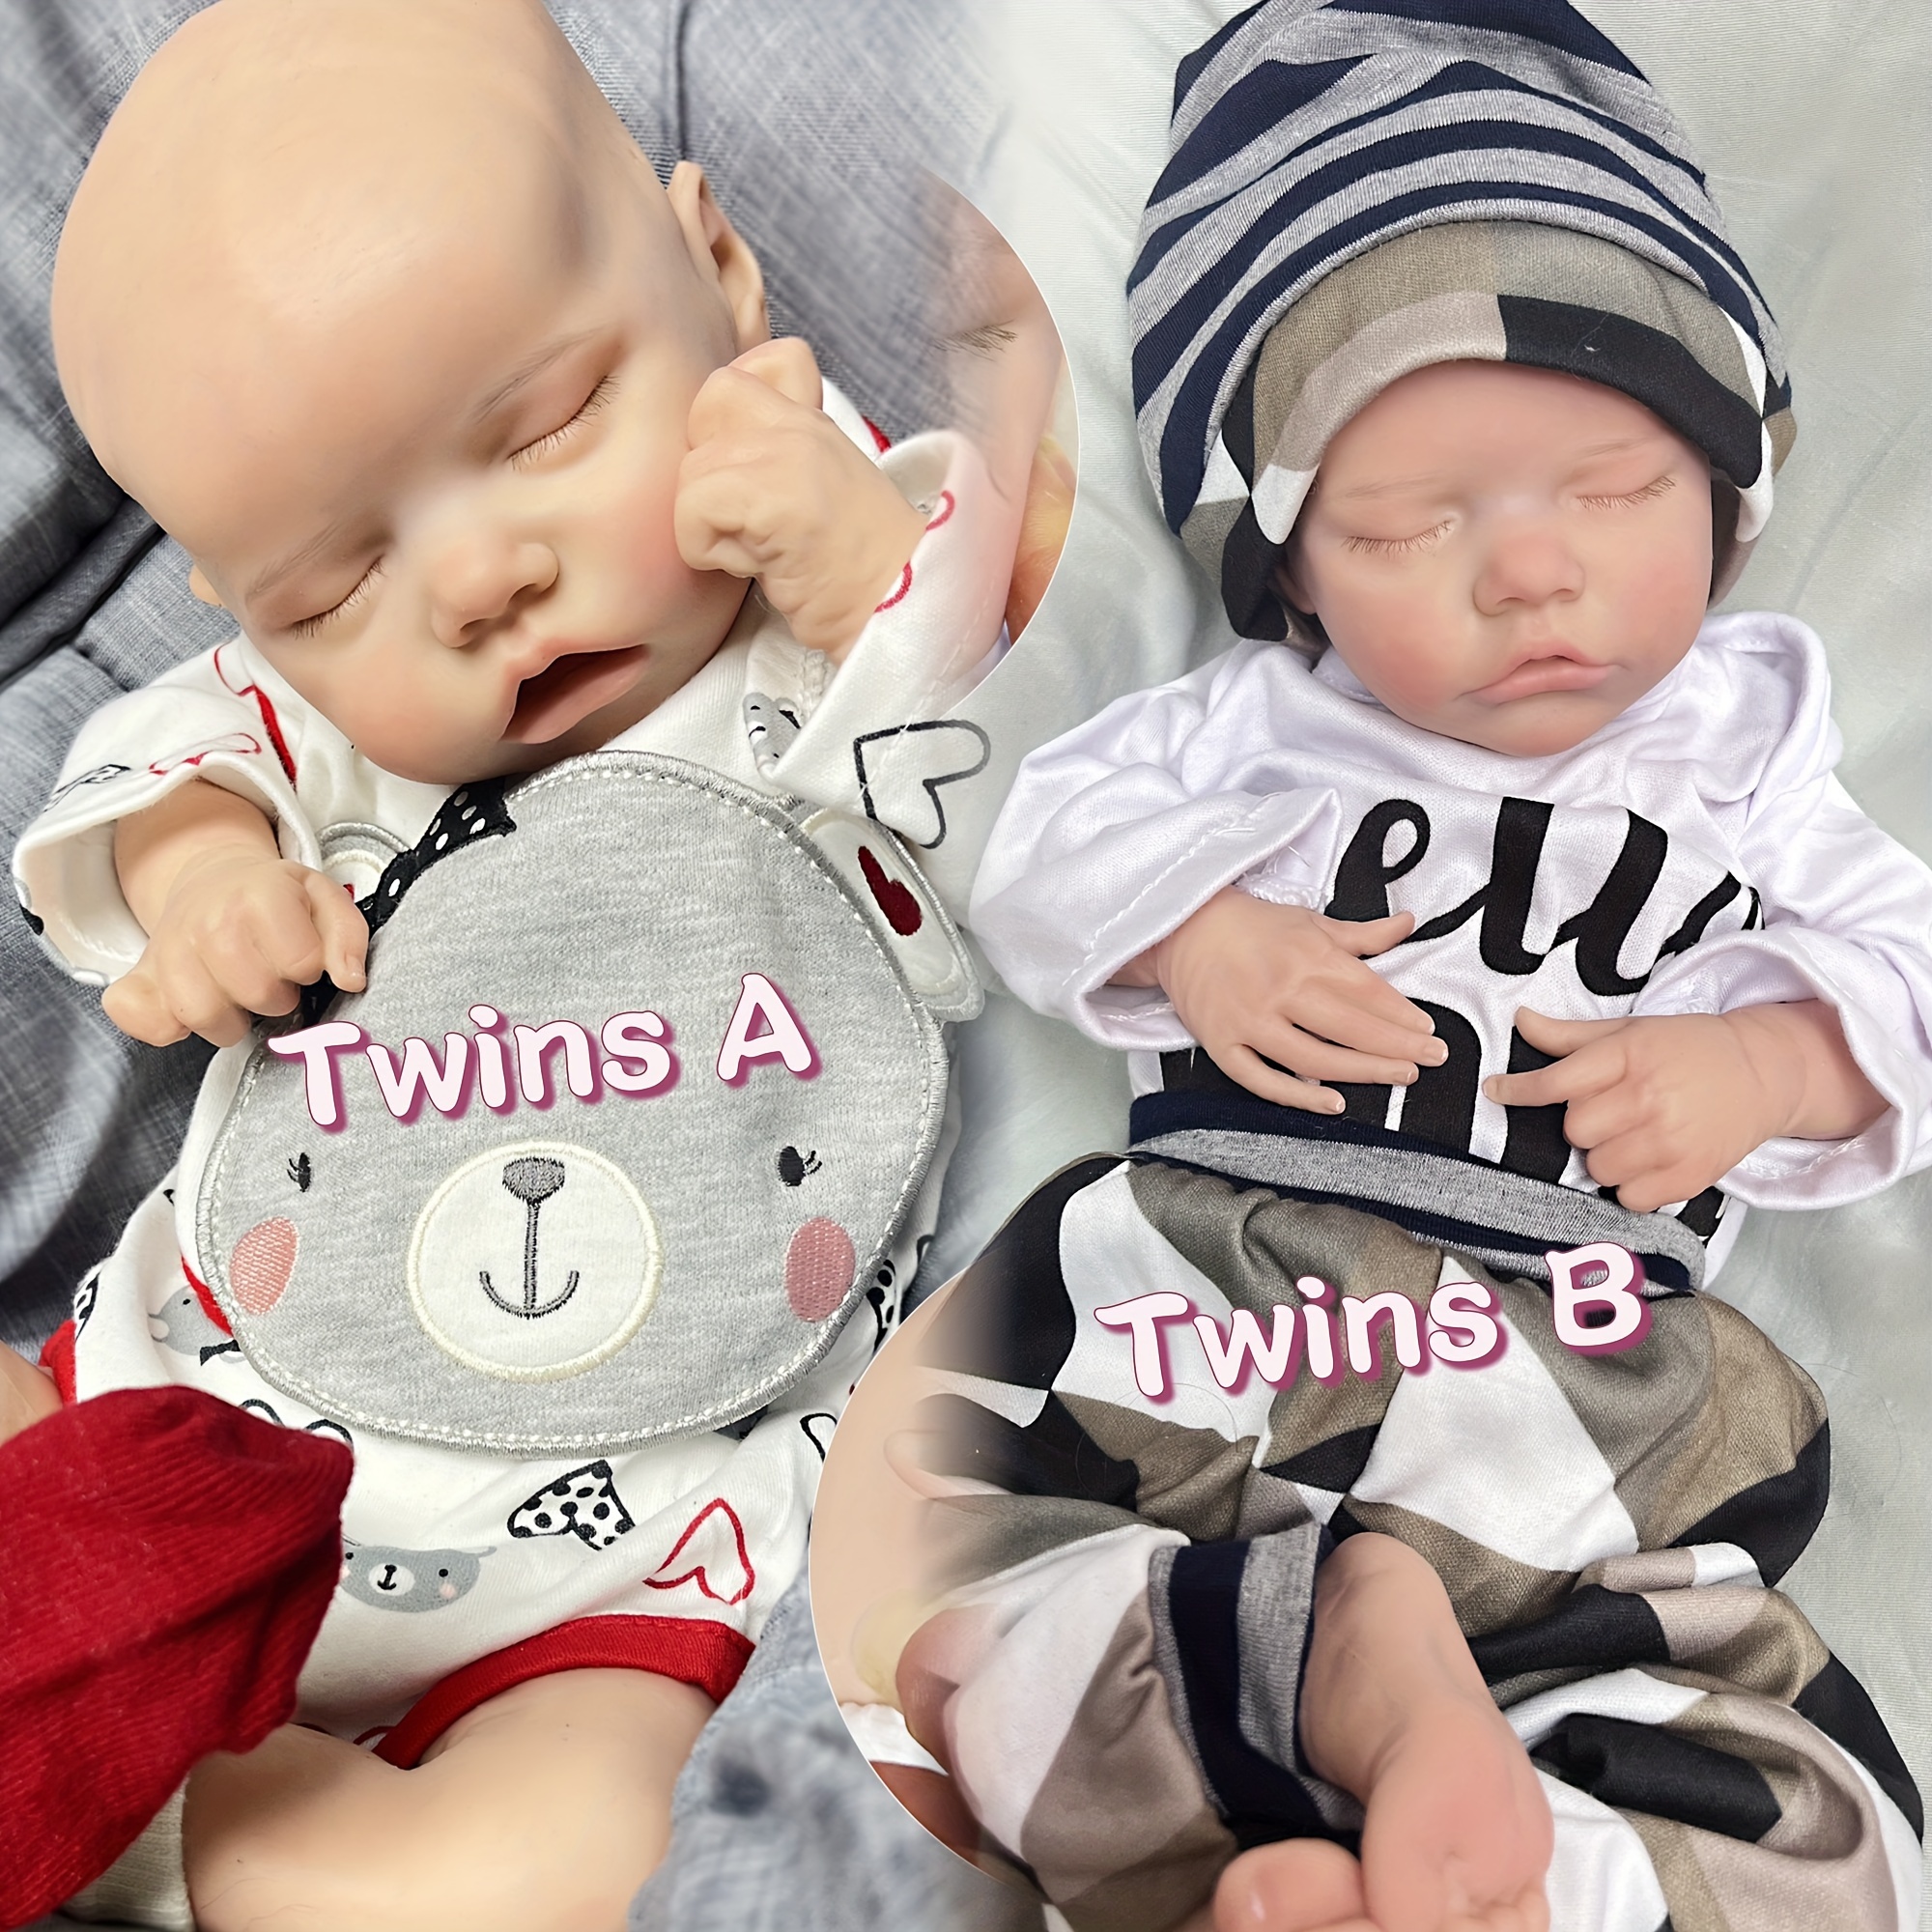 18Inch Twins Reborn Baby Doll Lifelike Full Body Silicone Doll